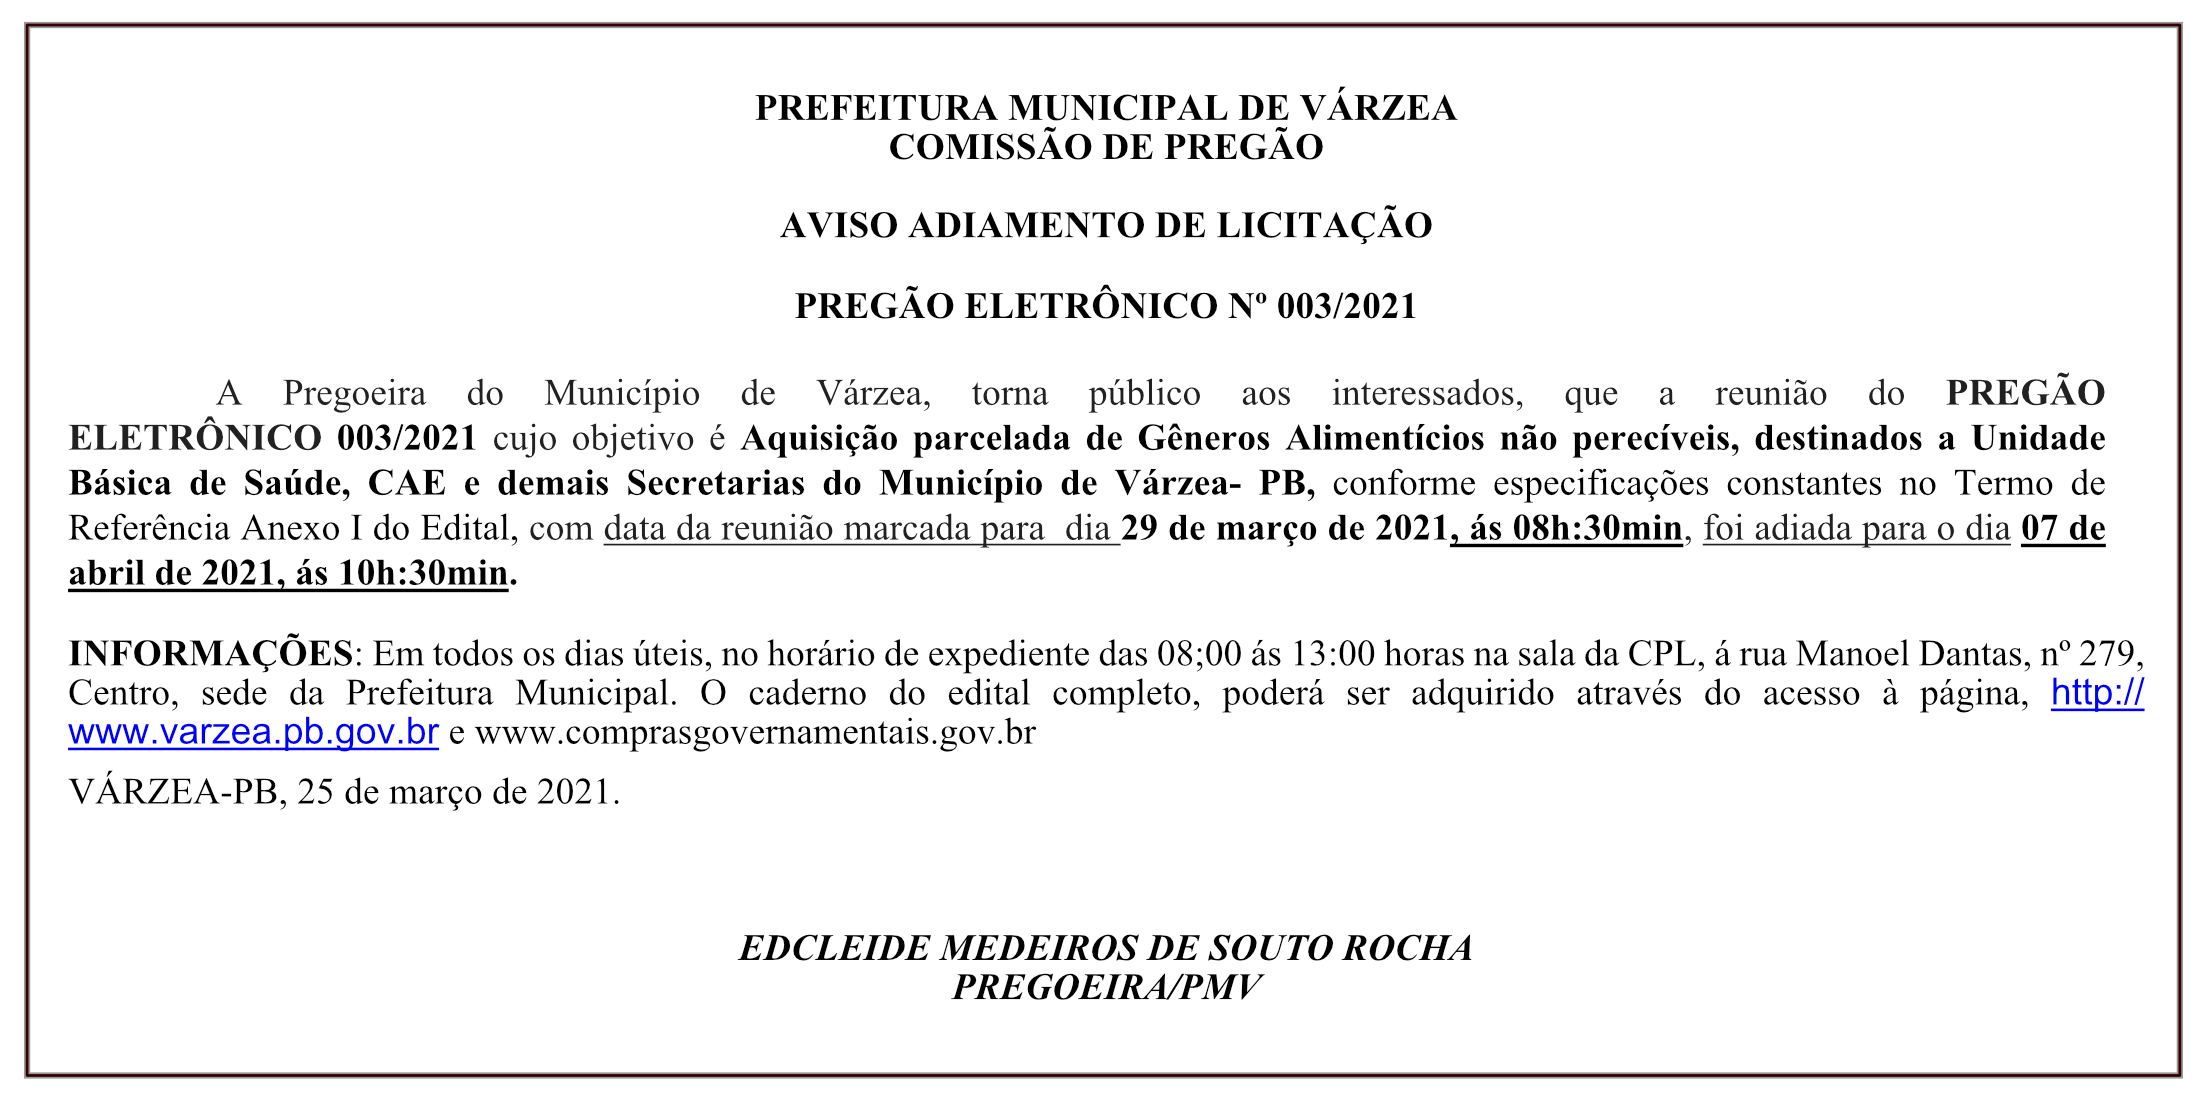 PREFEITURA MUNICIPAL DE VÁRZEA – AVISO ADIAMENTO DE LICITAÇÃO – PREGÃO ELETRÔNICO Nº 003/2021